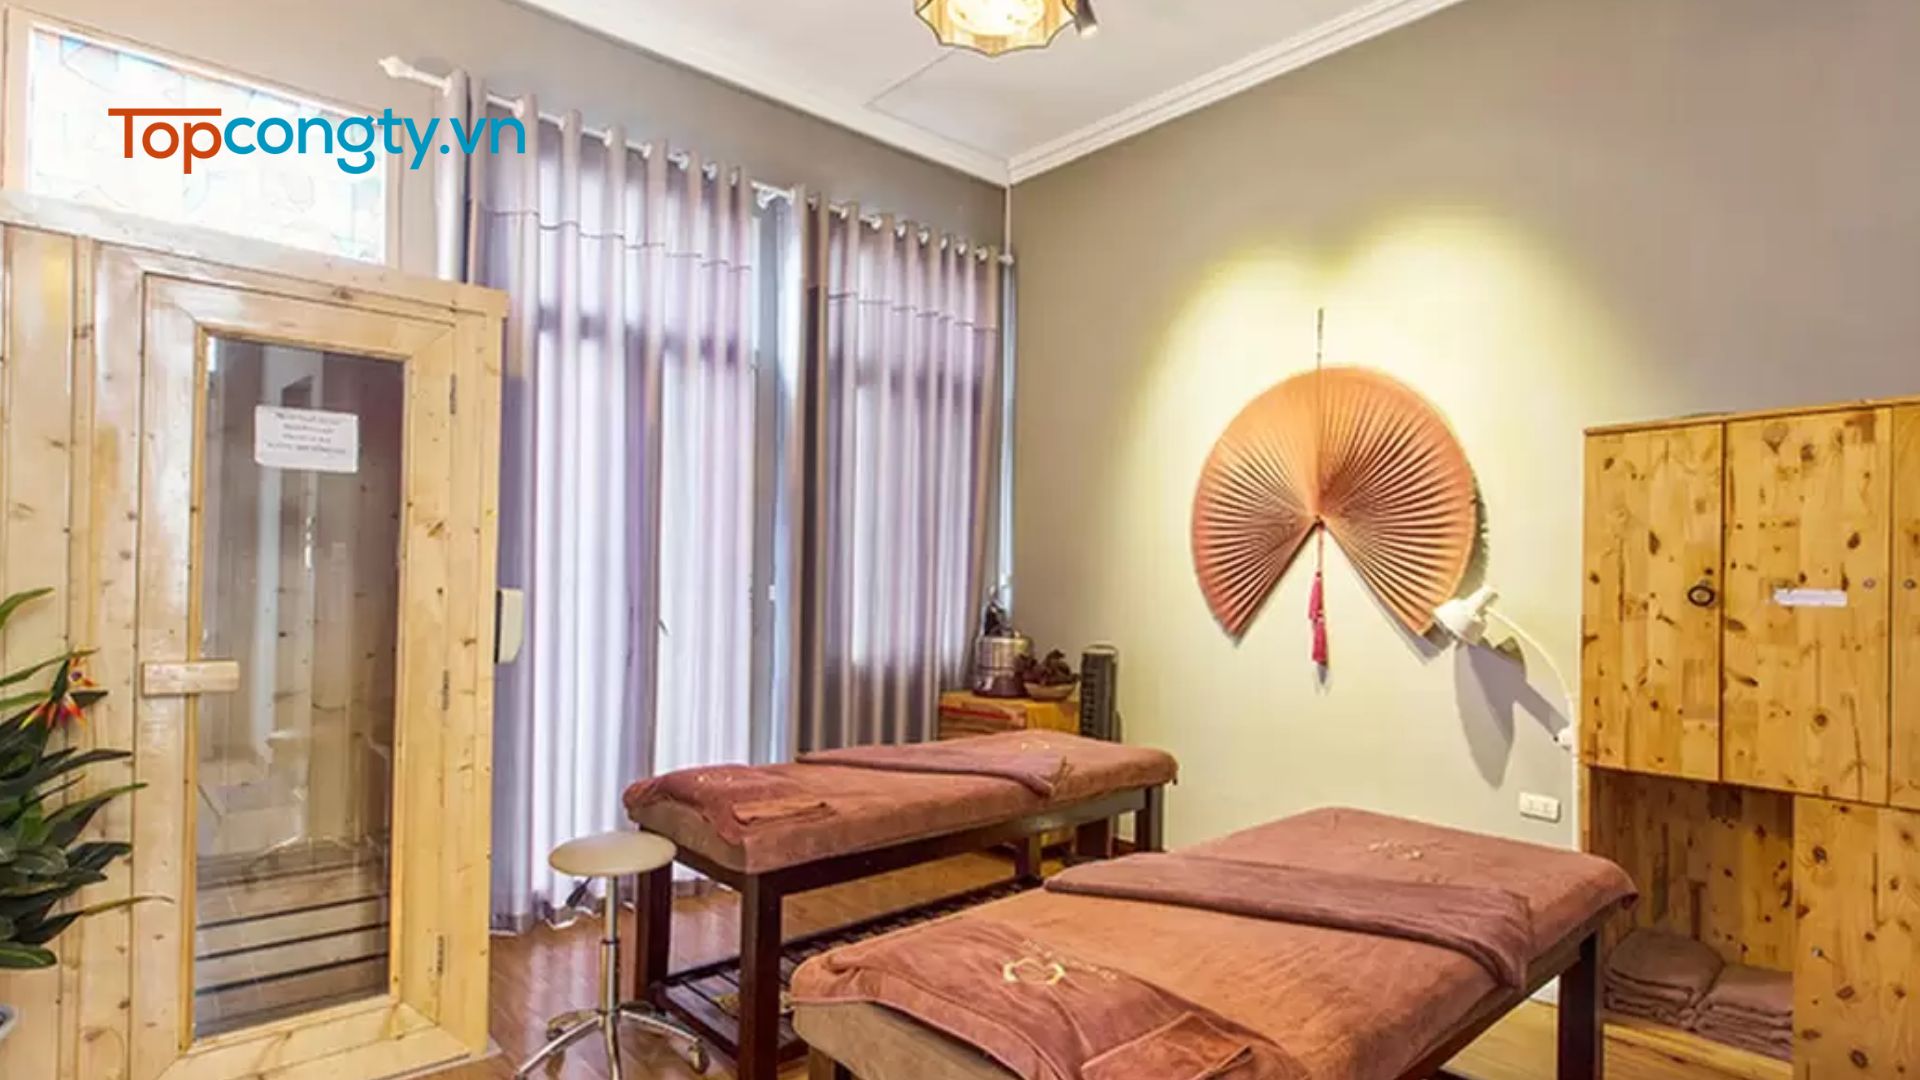 Shi Beauty & Spa - Địa chỉ massage Hà Nội tốt, giá cả phải chăng